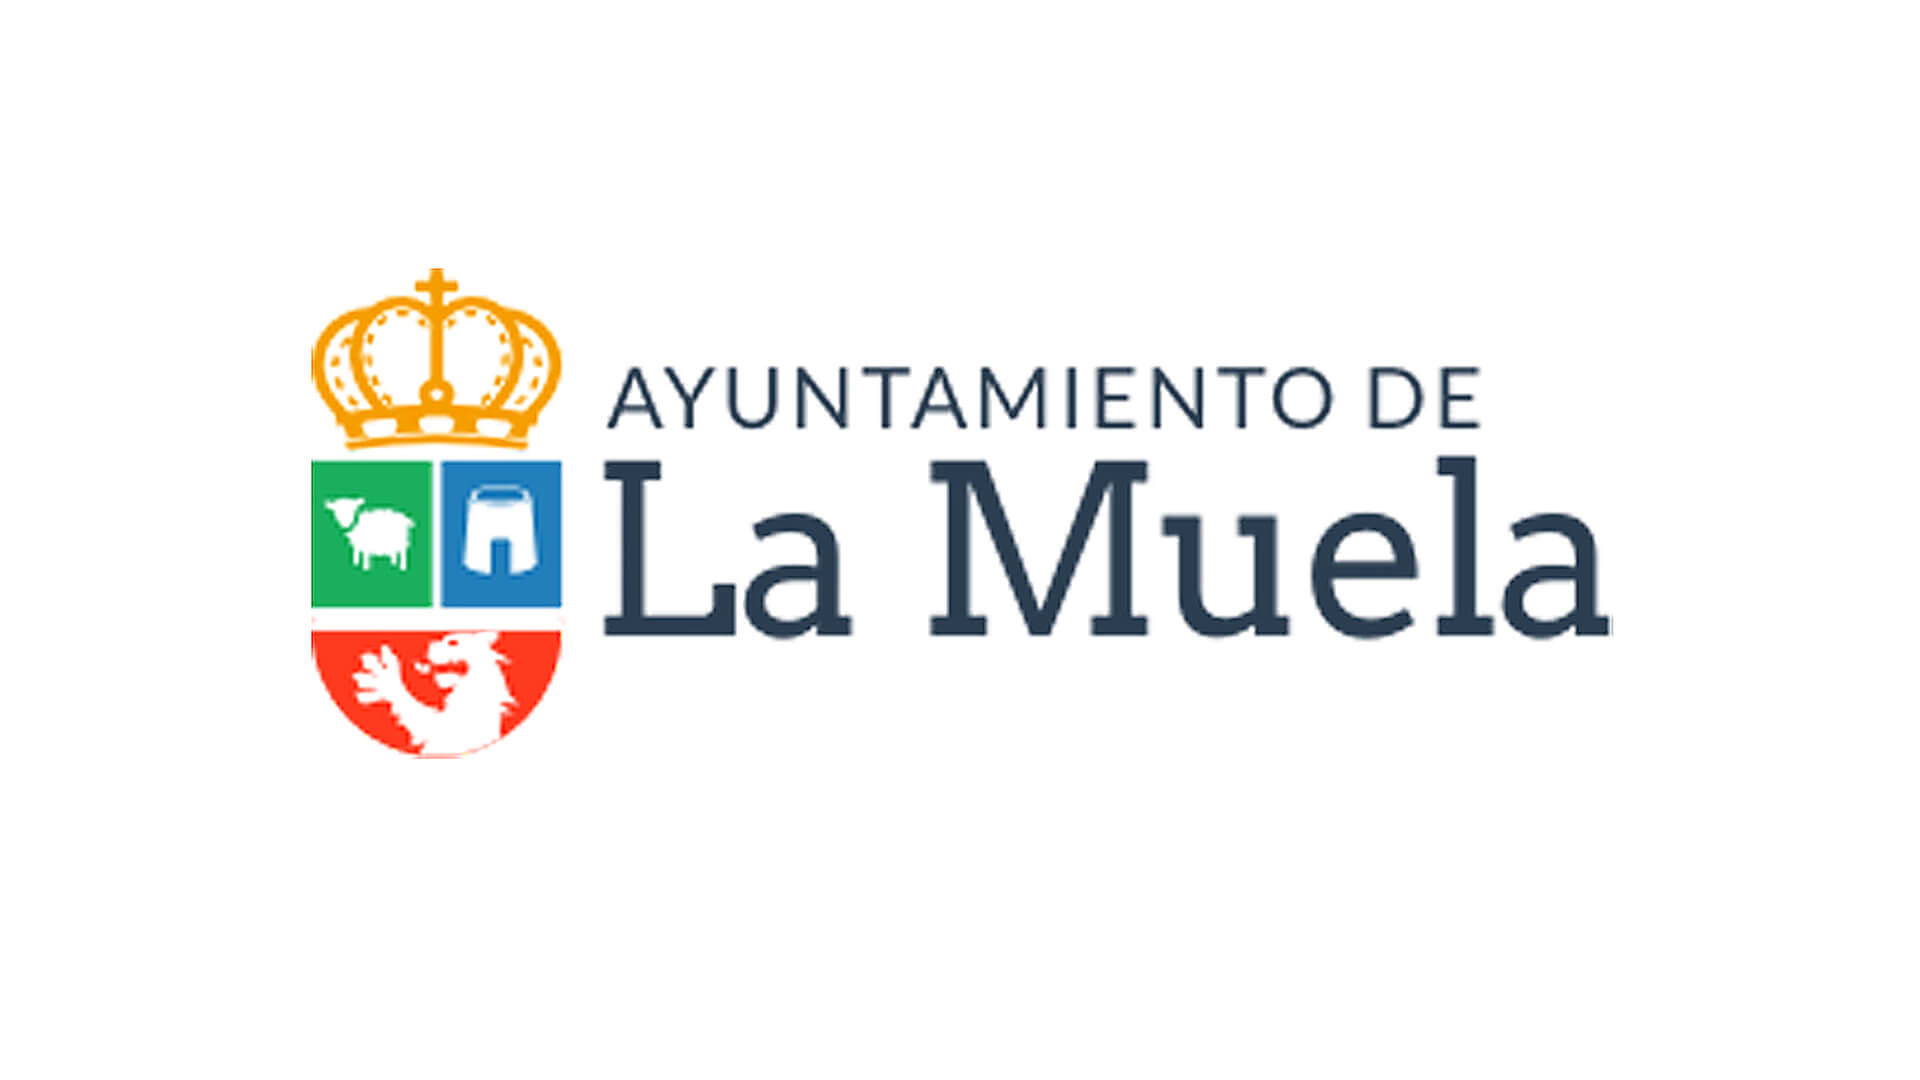 Ayuntamiento de La Muela - Clientes de ESMAS Gestión Deportiva